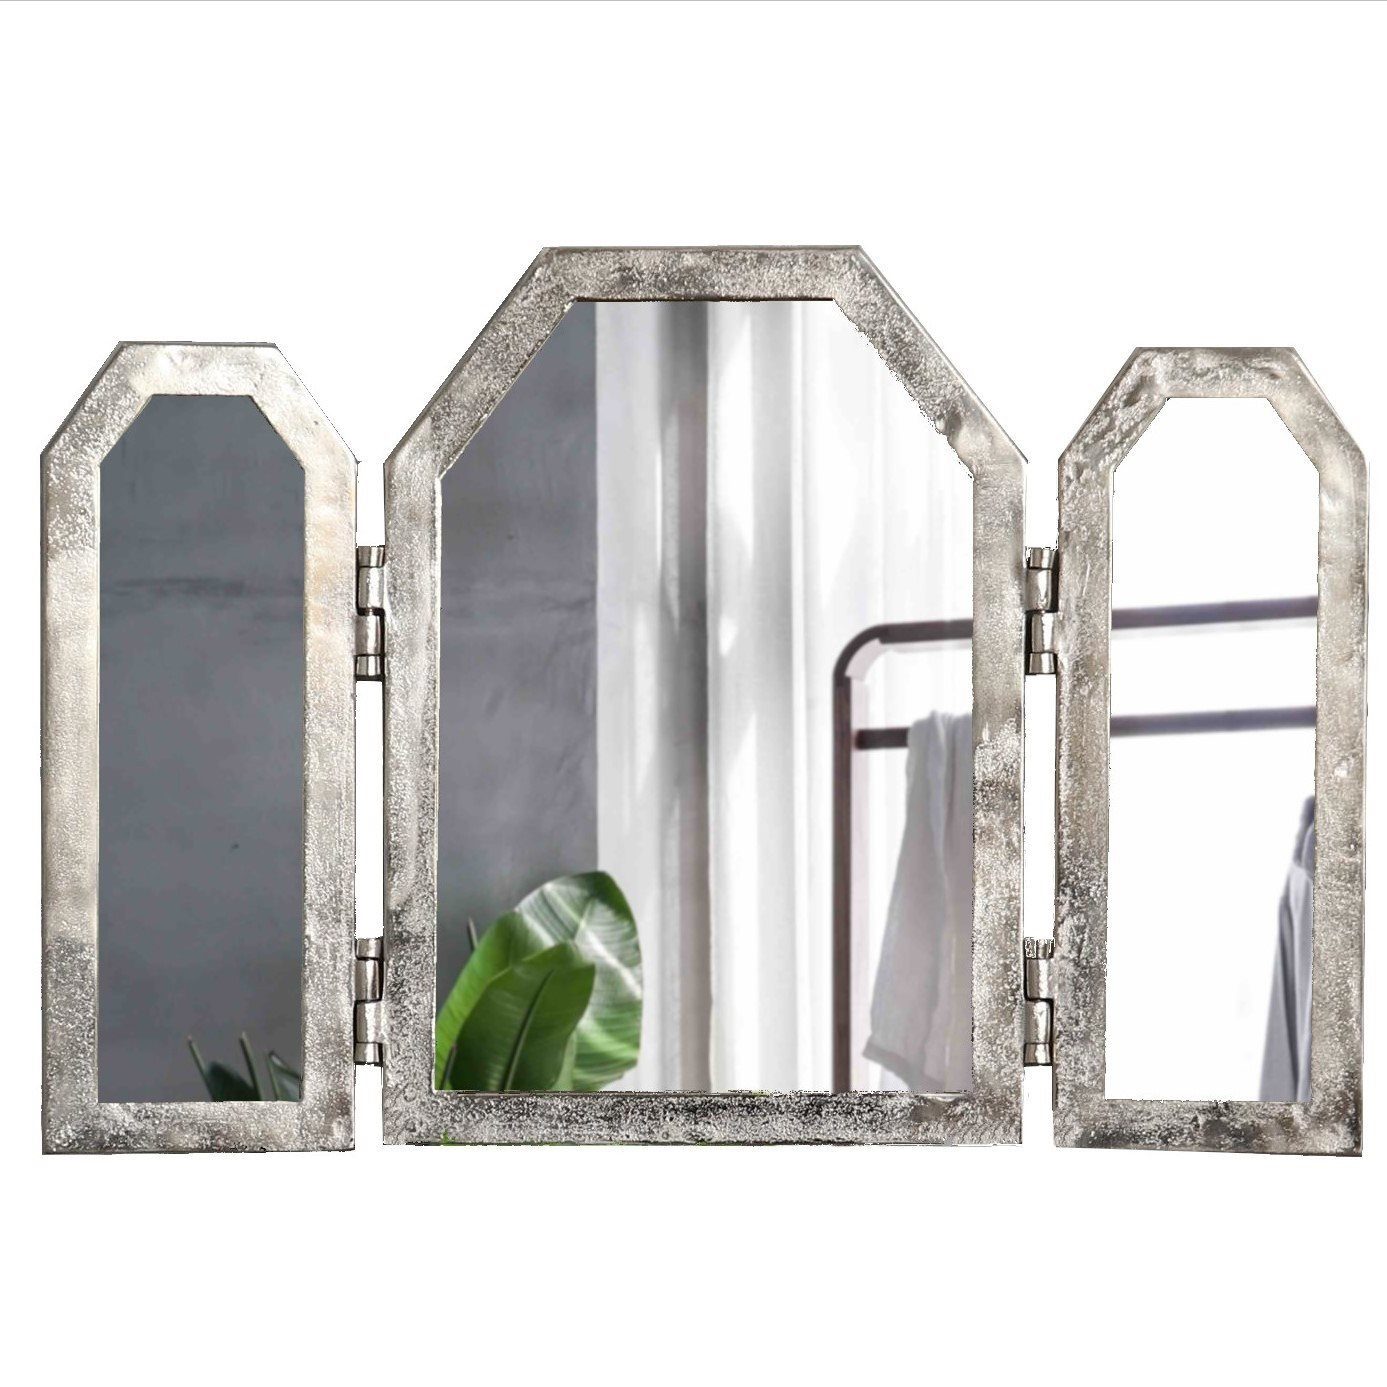 baario Wandspiegel »Wandspiegel ALBI«, silber Aluminium 3-teilig klappbar  Bad Antik Design Klappspiegel online kaufen | OTTO